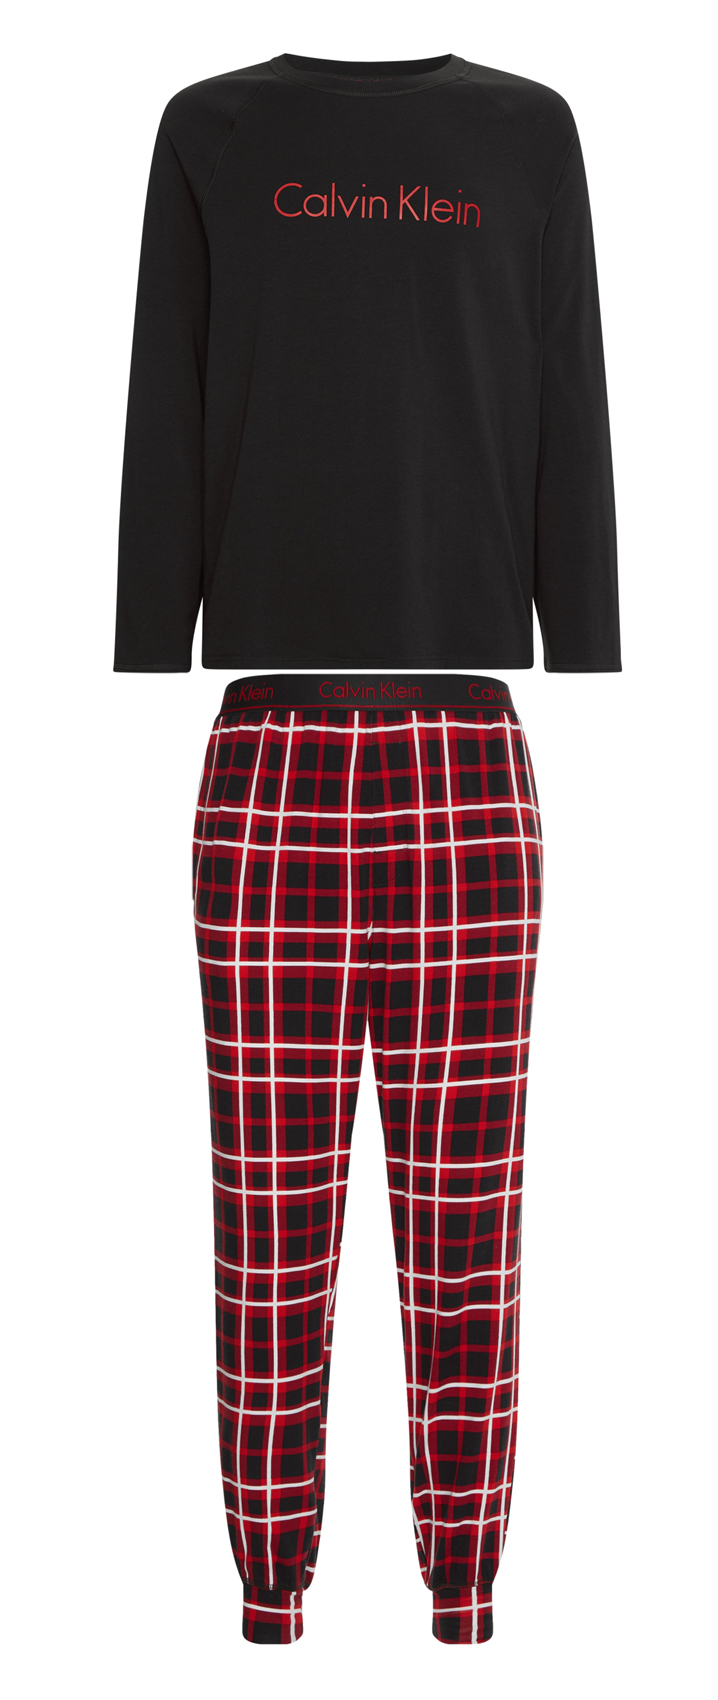 Pyjama long Calvin Klein coton rouge et noir avec logo floqué